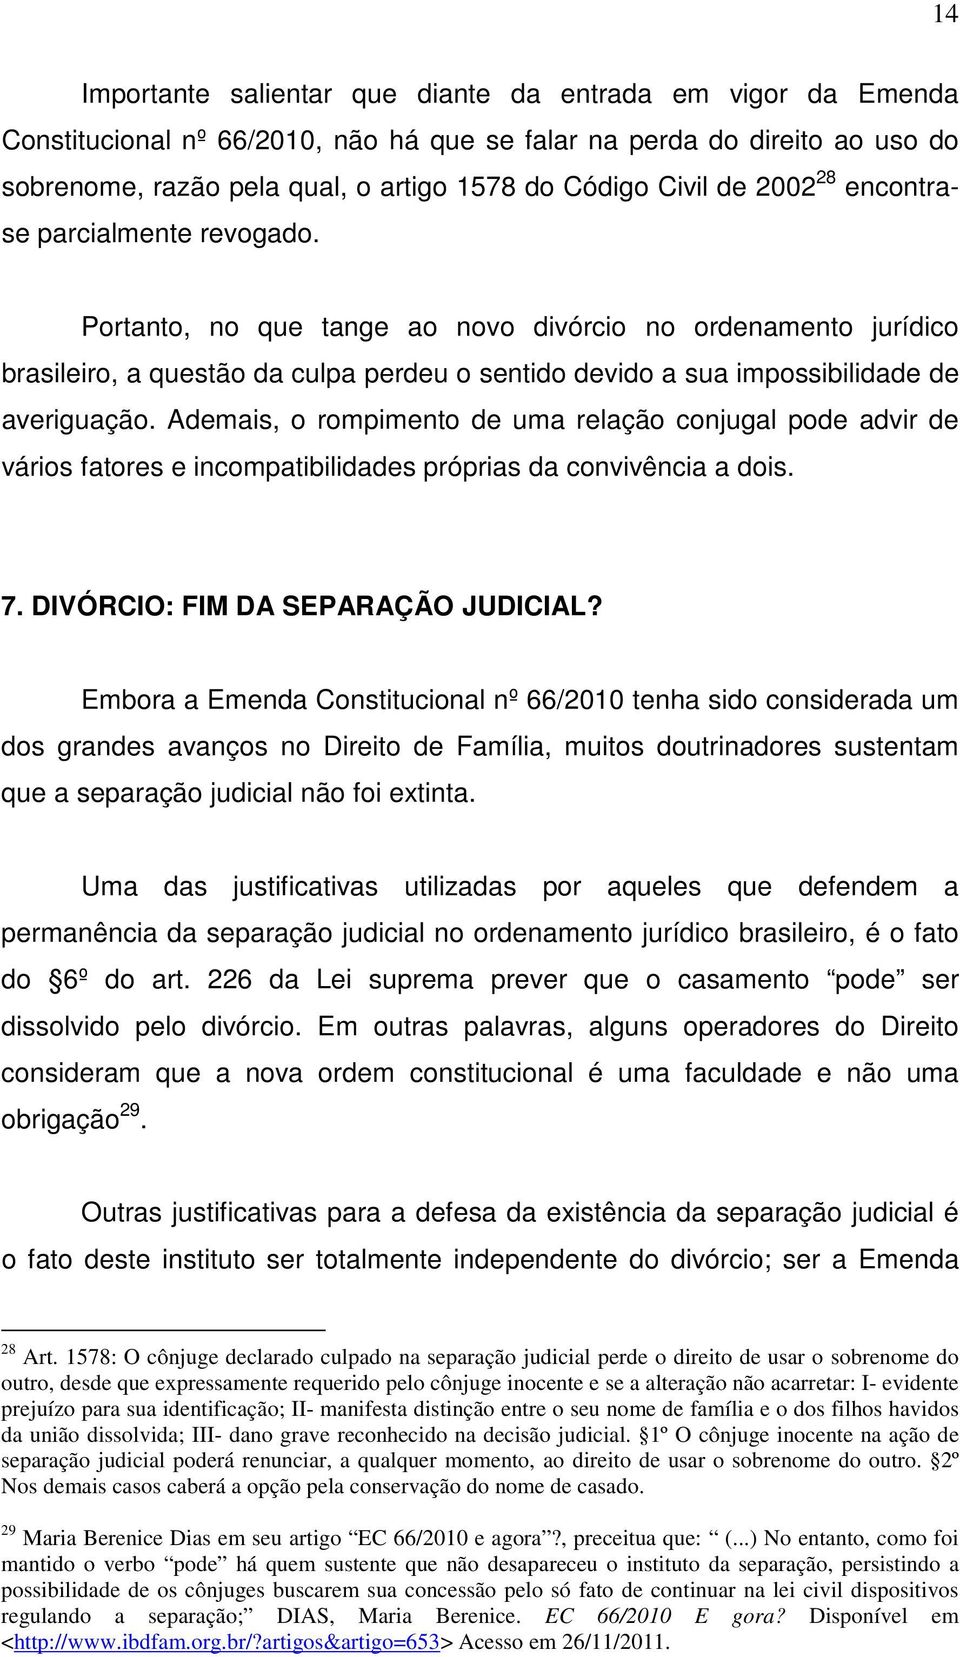 Portanto, no que tange ao novo divórcio no ordenamento jurídico brasileiro, a questão da culpa perdeu o sentido devido a sua impossibilidade de averiguação.